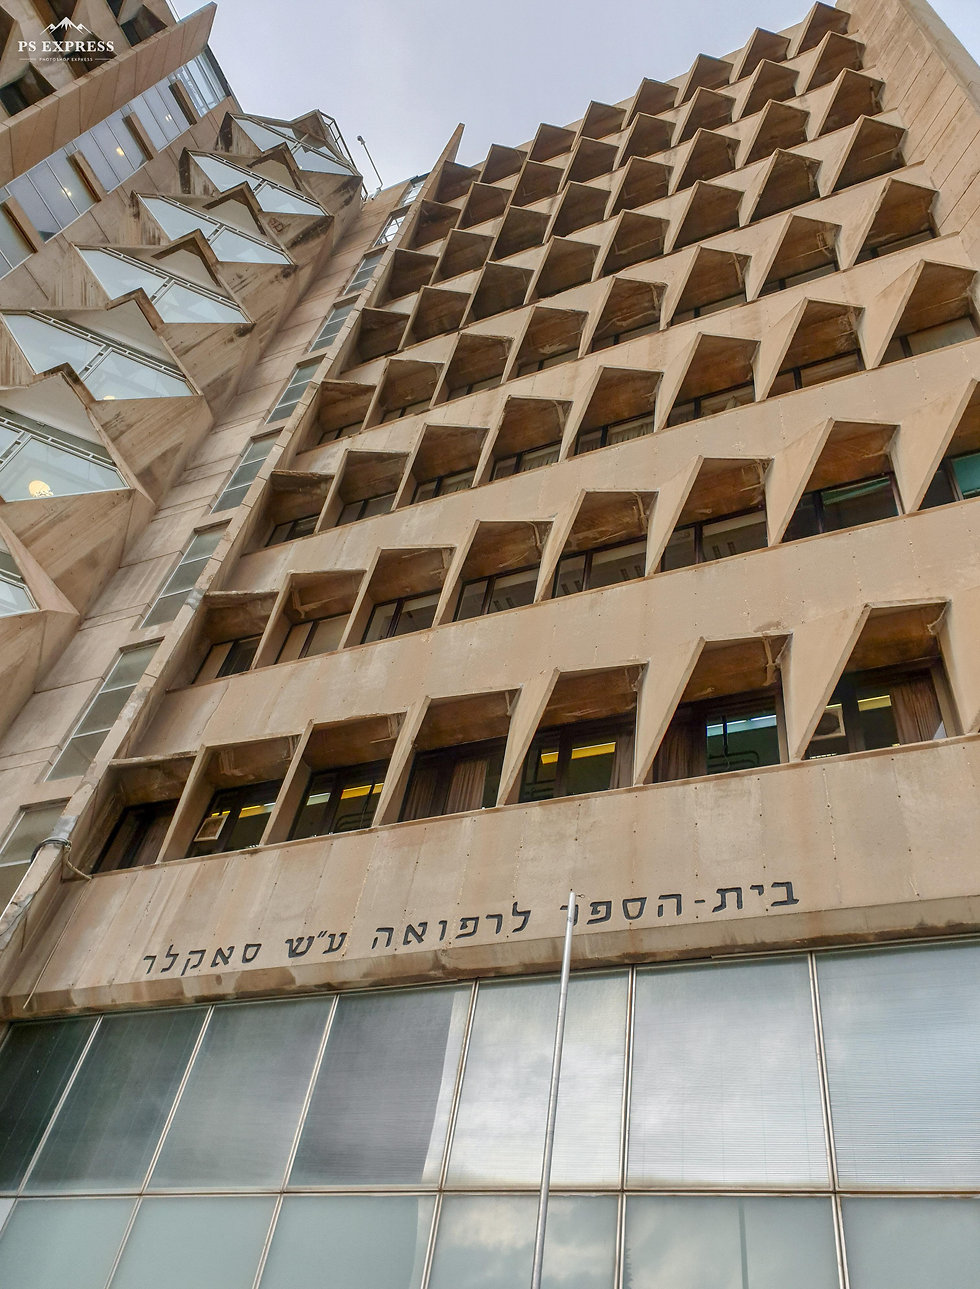 Sackler Faculty of Medicine, Tel Aviv University (צילום: יריב כץ)